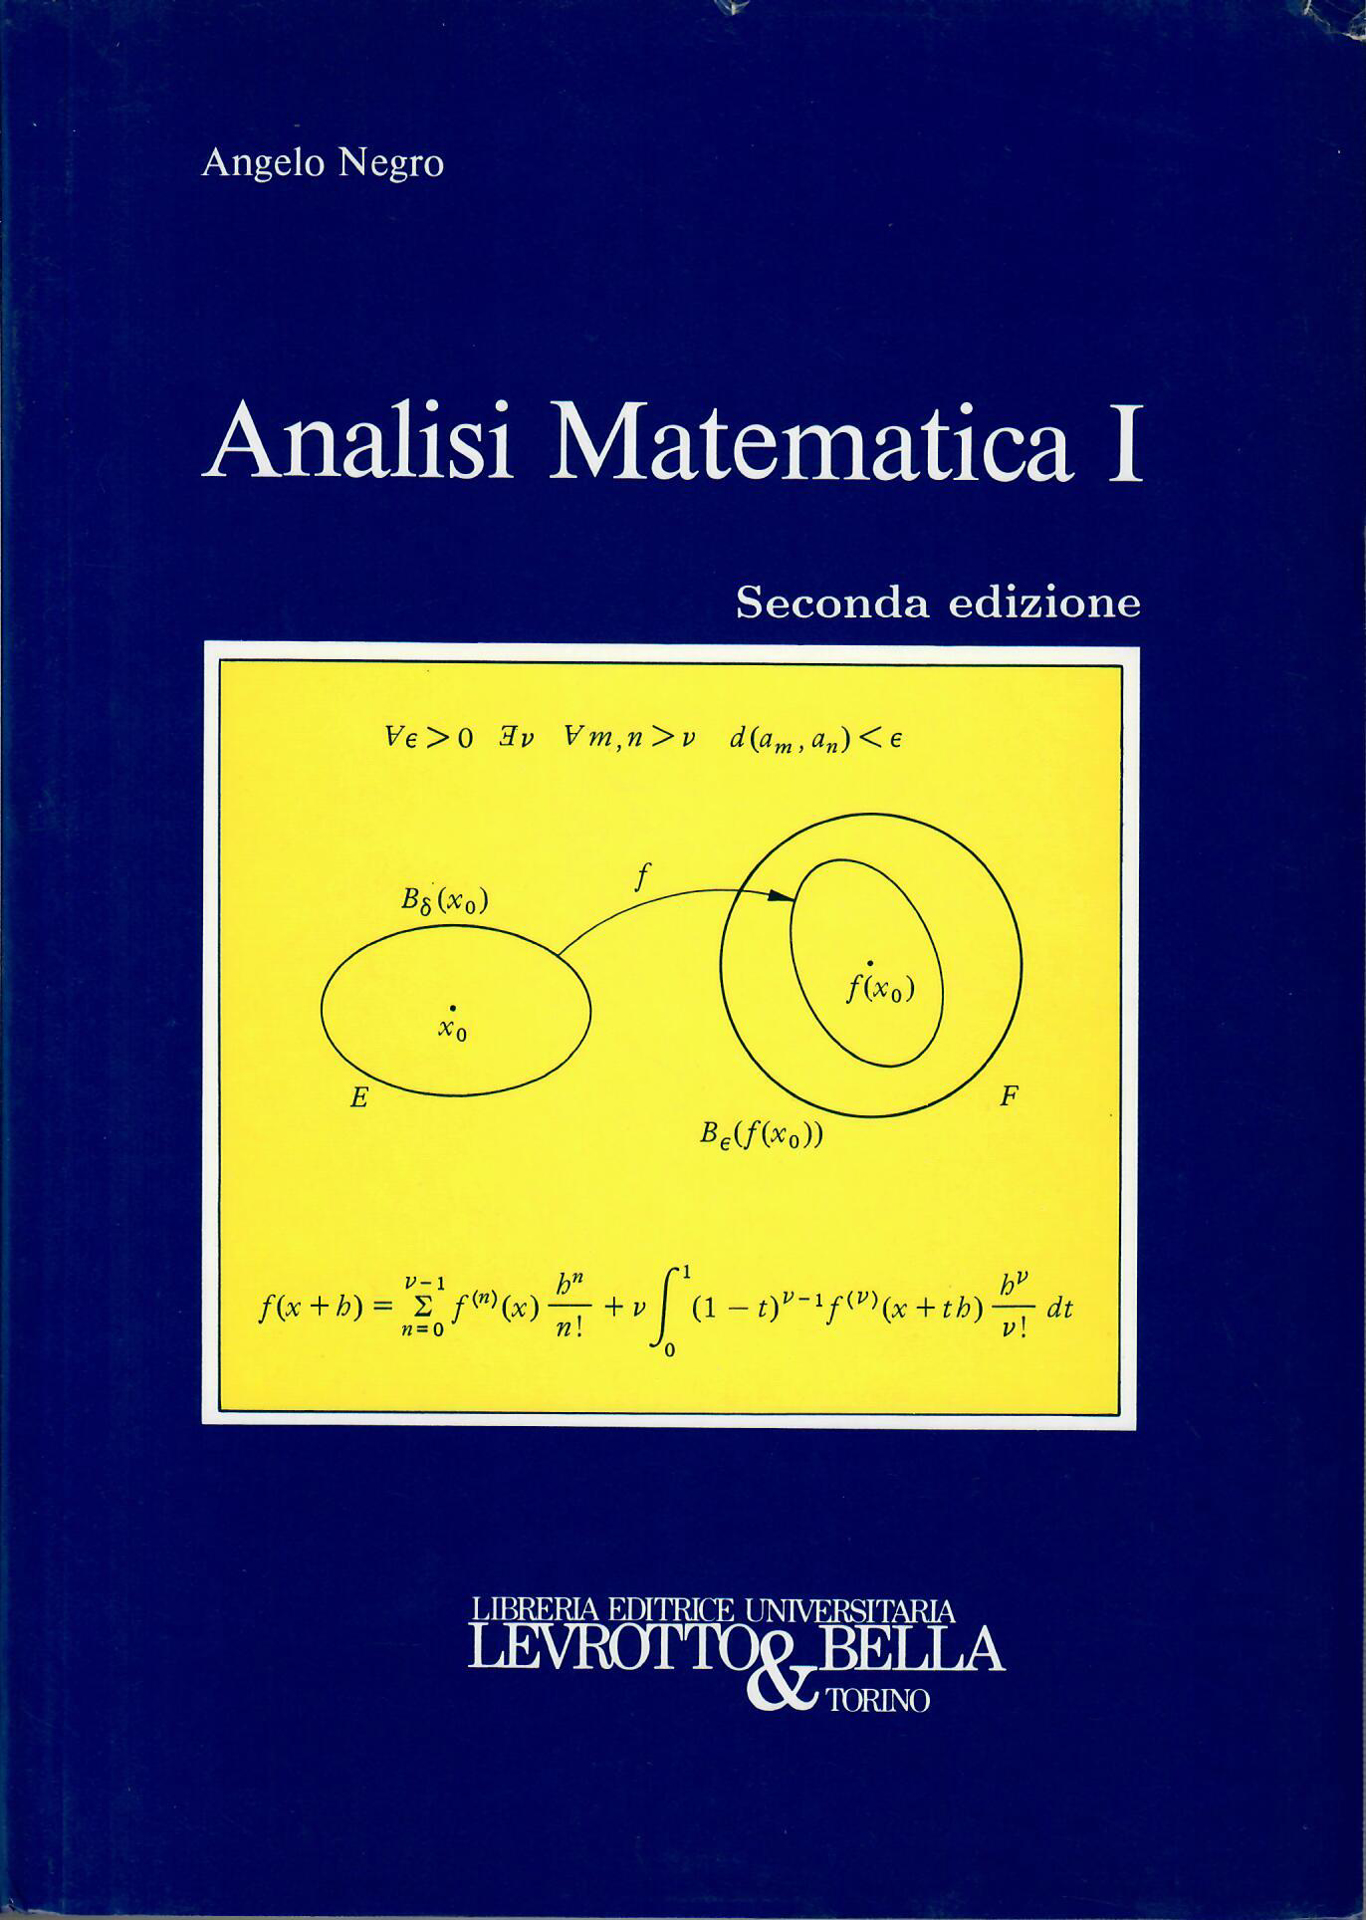 ANALISI MATEMATICA 1-Levrotto & Bella - Libreria Editrice Universitaria